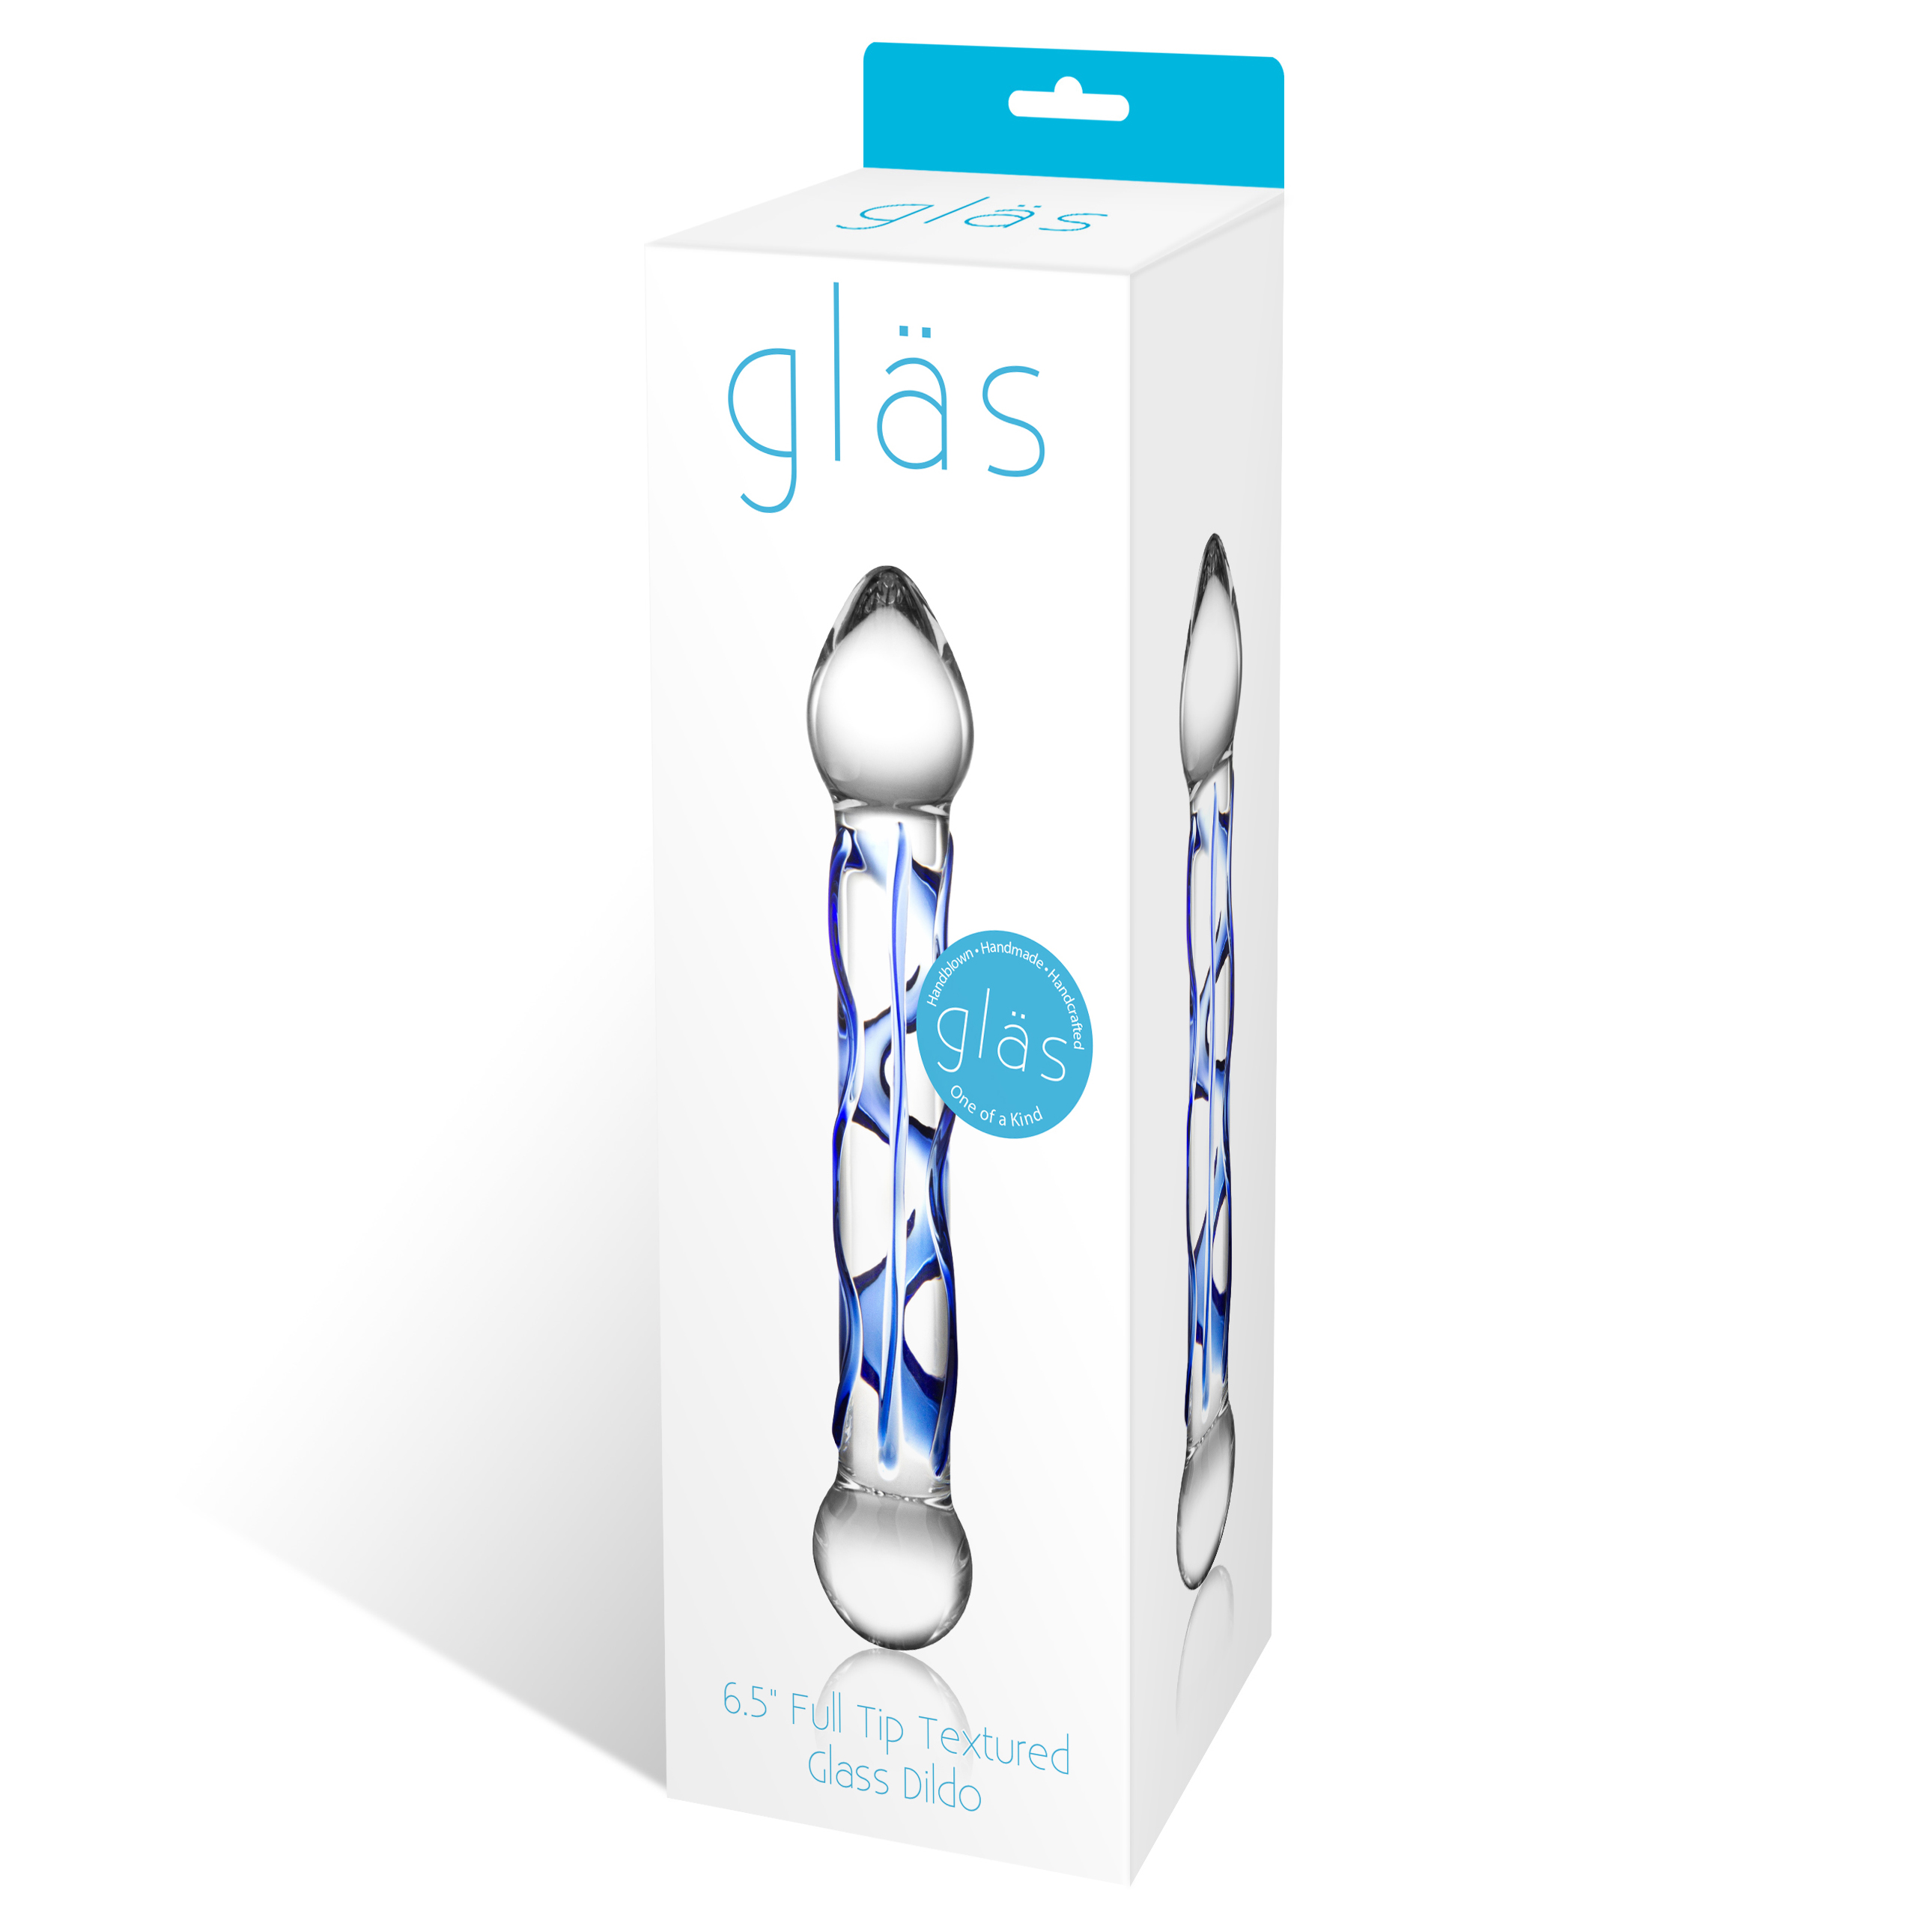 Gläs - Full Tip Glasdildo